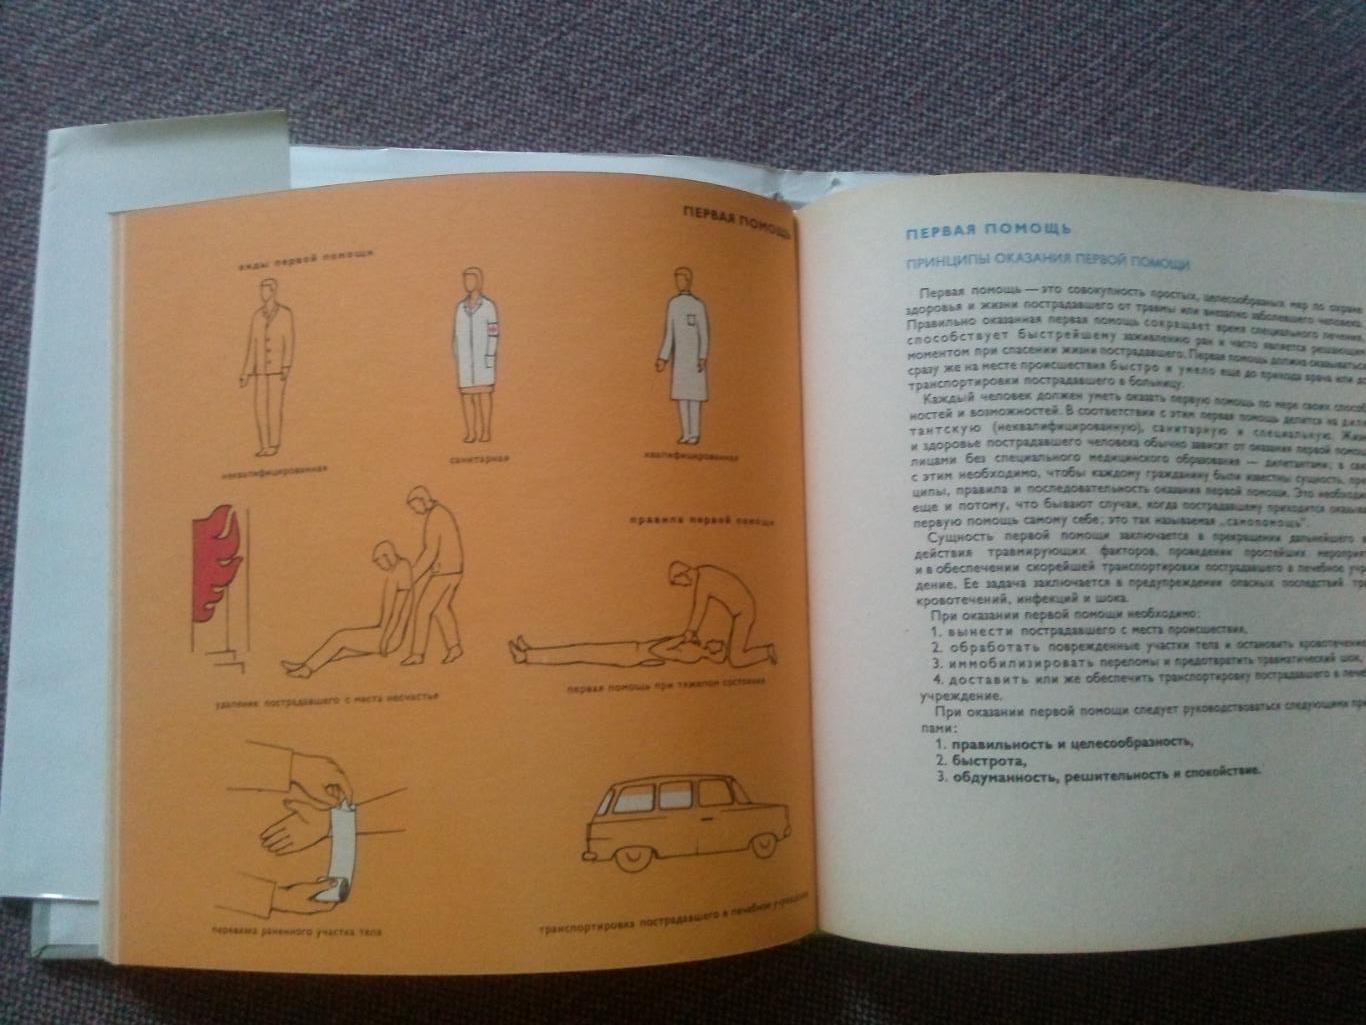 Ян Юнас - Атлас первой медицинской помощи 1974 г.Медицина (словацкое издание 4